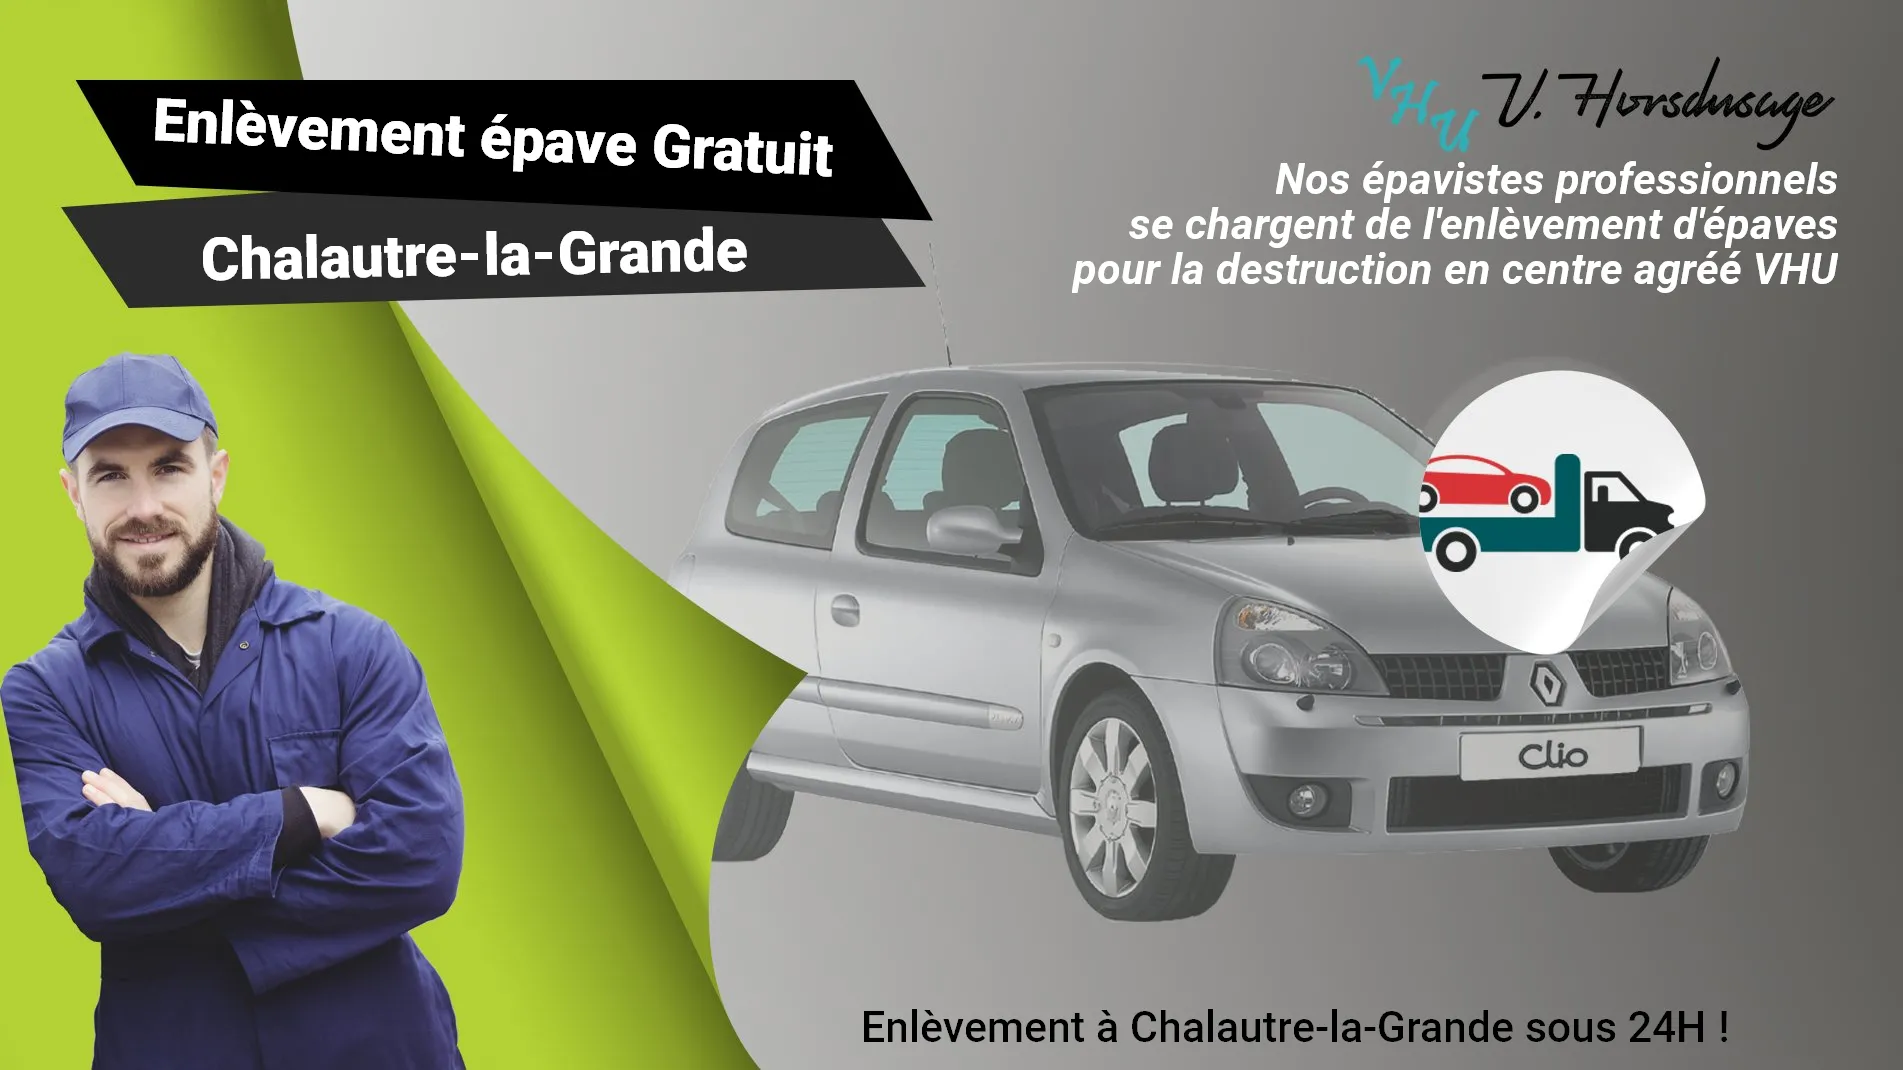 Pour un enlèvement gratuit à Chalautre-la-Grande, contactez nos épavistes agréé VHU